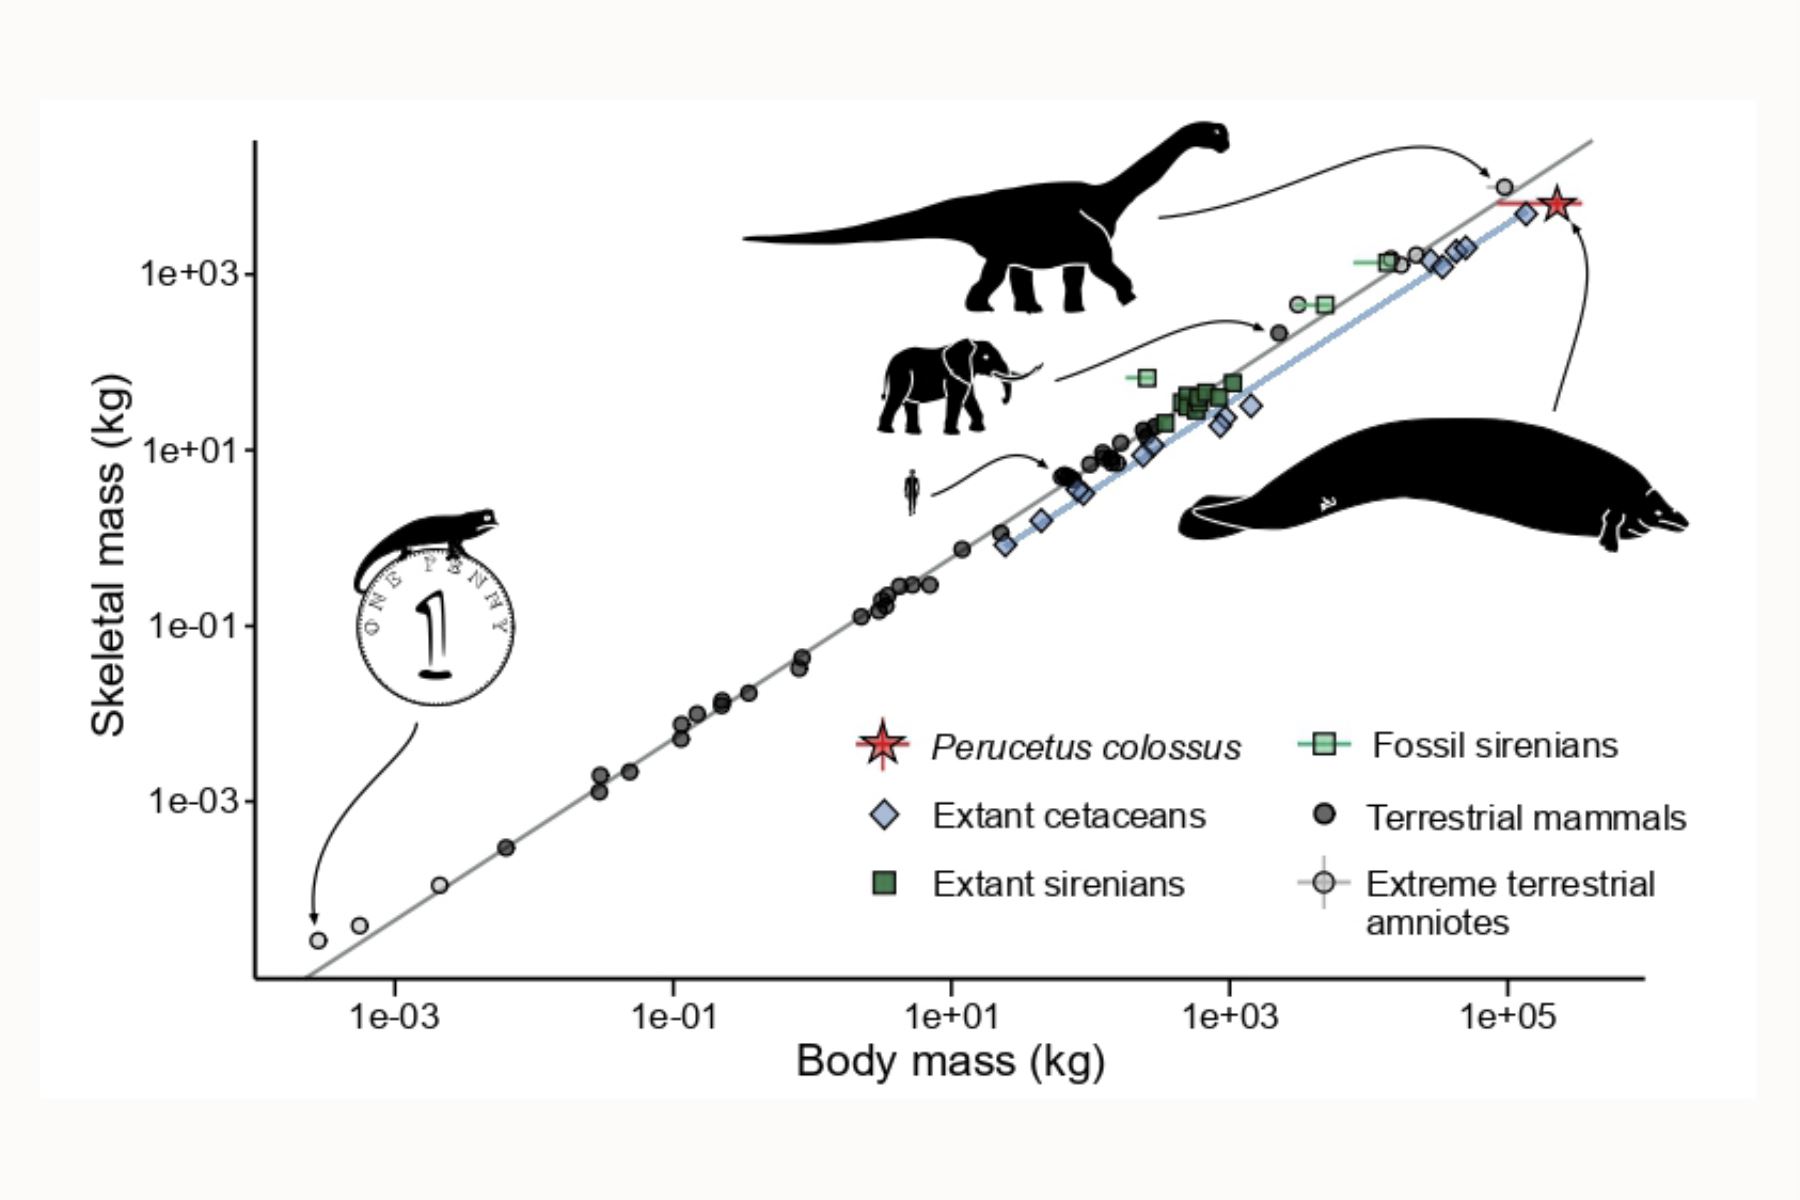 Rango de masa corporal total y masa esquelética entre amniotas (mamíferos y reptiles, incluidas las aves).